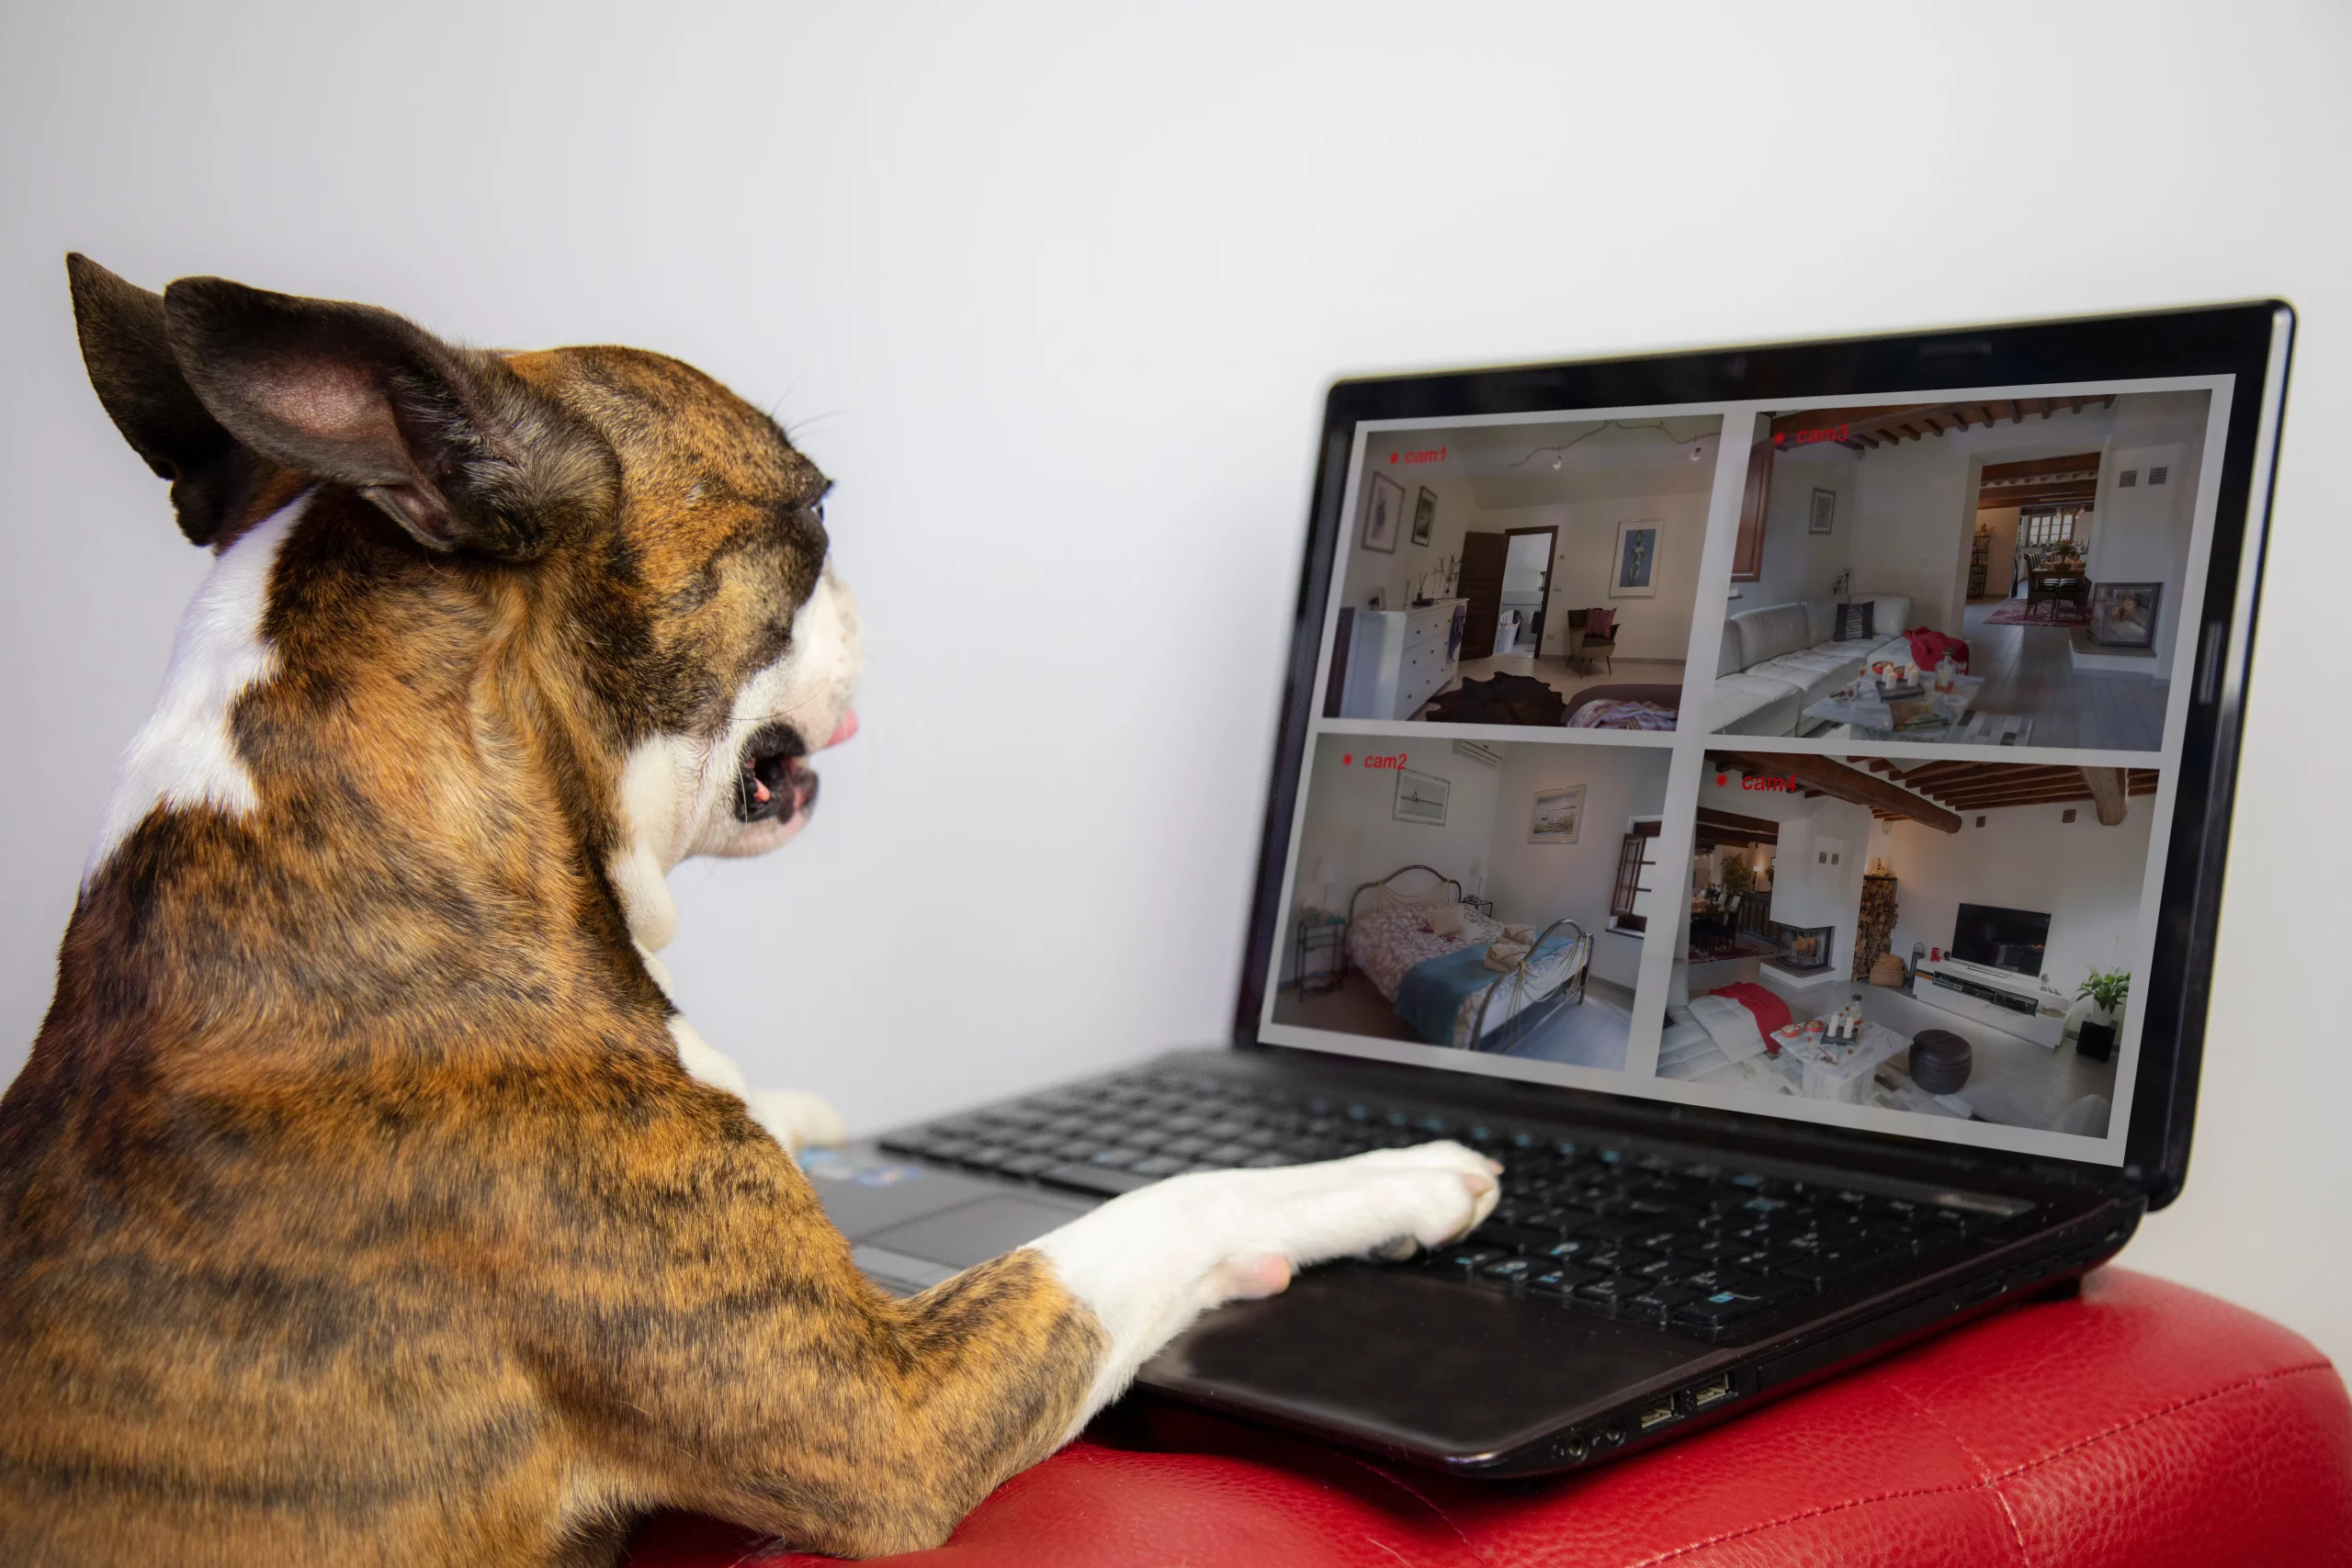 Ein Hund, der wie ein Boxer aussieht, sitzt vor einem Laptop, auf dessen Bildschirm die Ansichten von Überwachungskameras zu sehen sind, die verschiedene Zimmer eines Hauses zeigen. Der Hund scheint interessiert auf den Bildschirm zu blicken, während er eine Pfote auf die Tastatur legt.